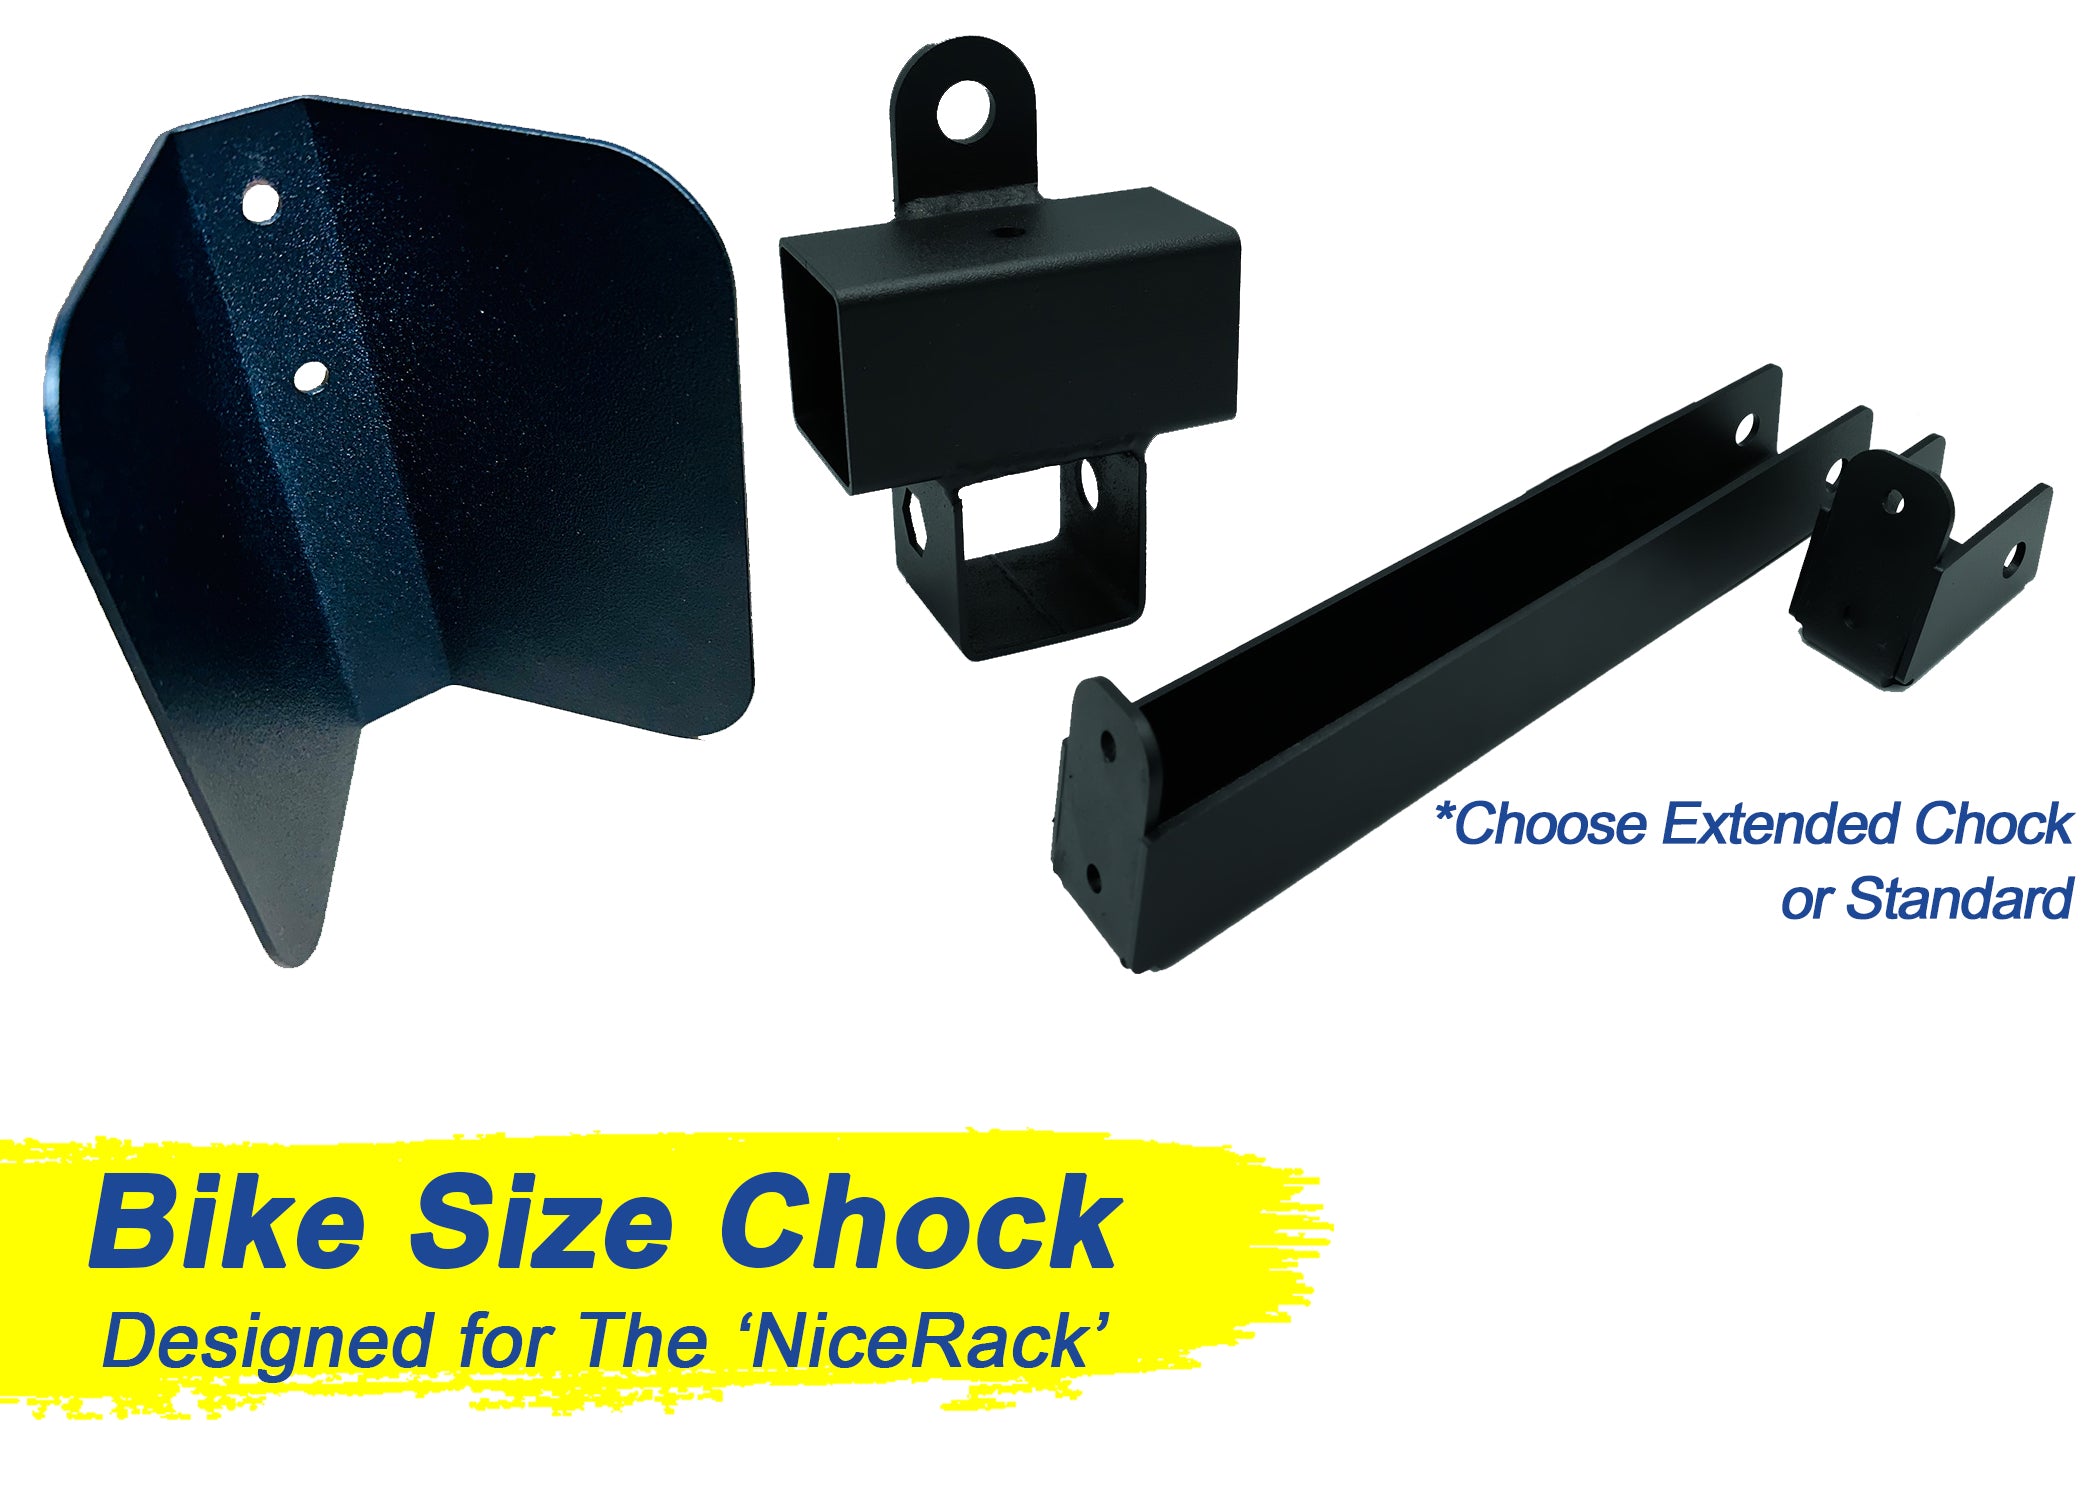 NiceRack | Add a Chock